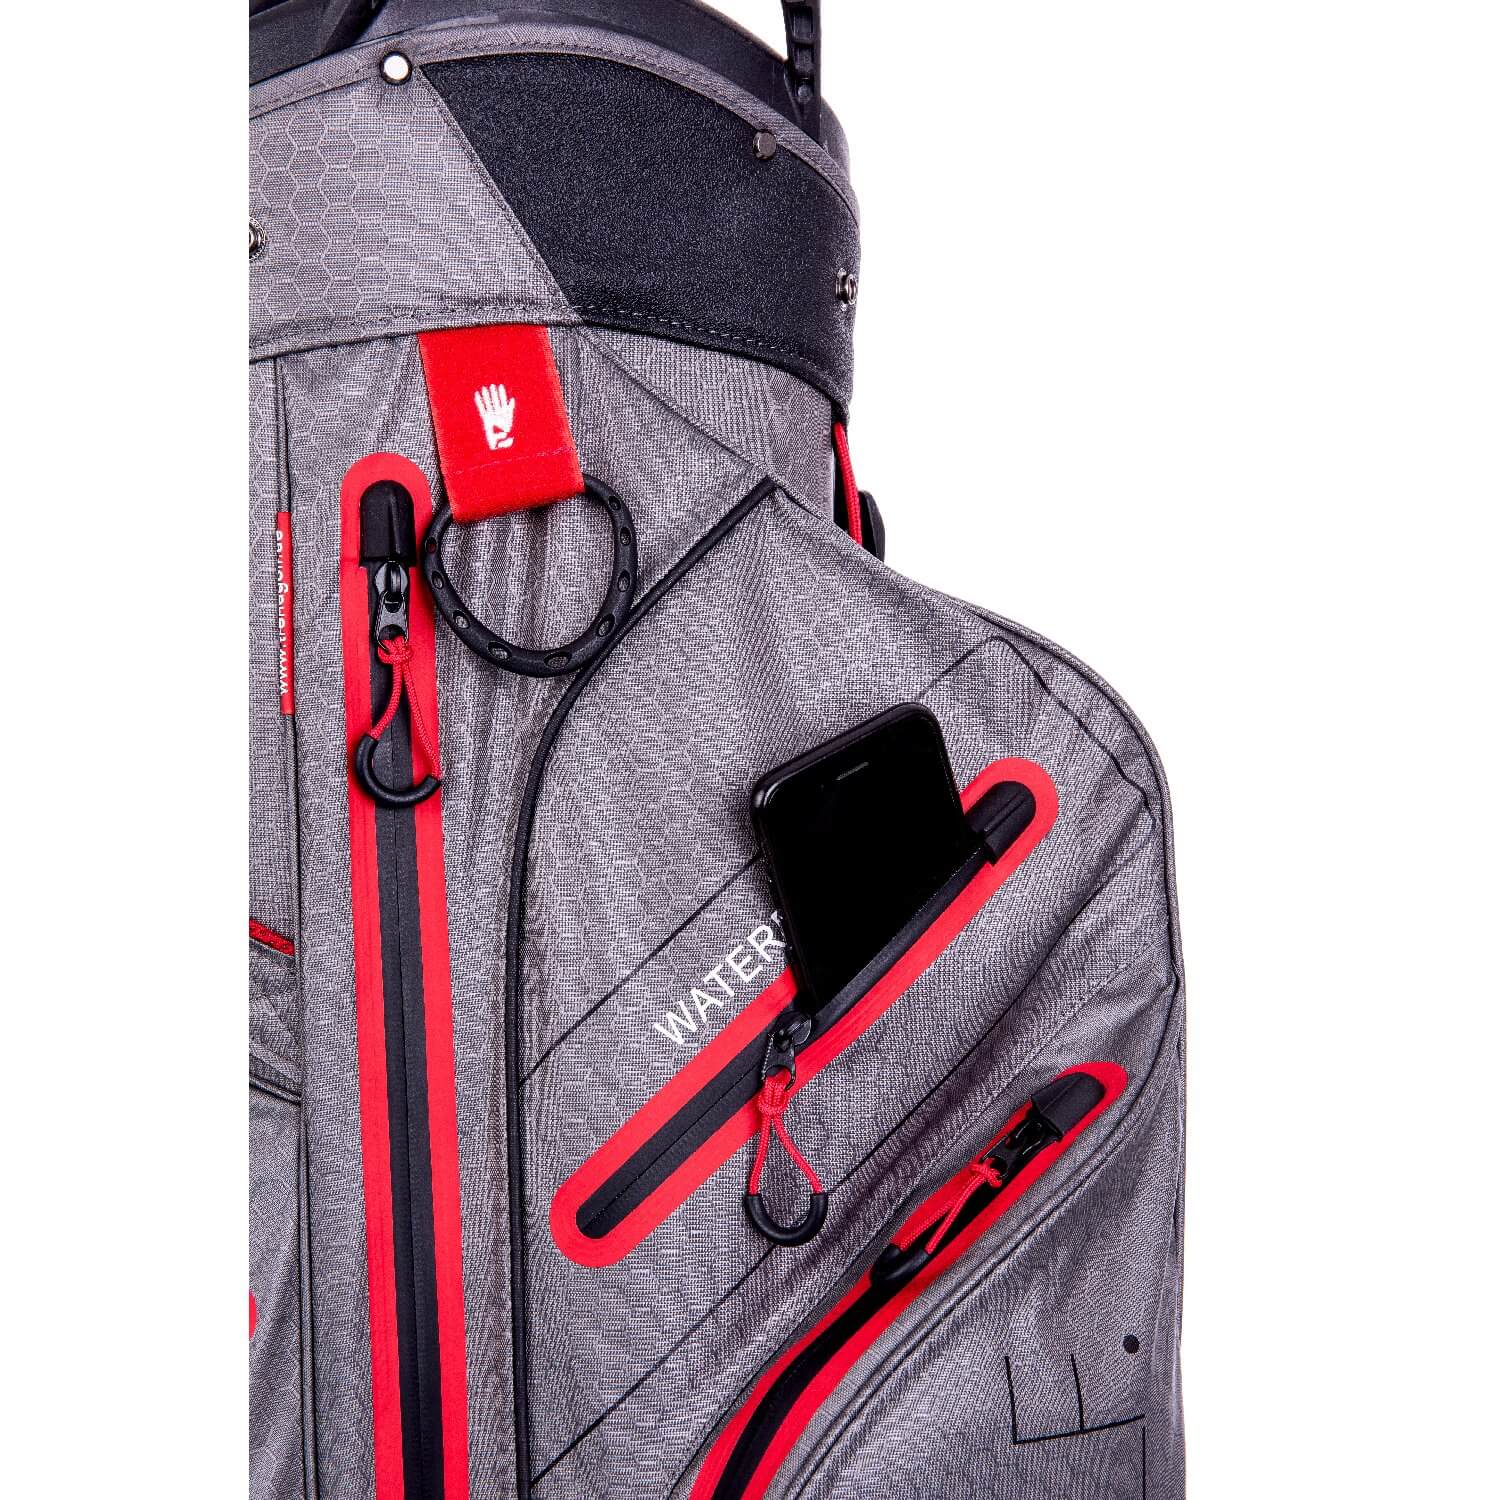 Die rote trendGOLF Golfbag vor weißem Hintergrund mit Focus auf die Extrataschen & den Handtuchhalter